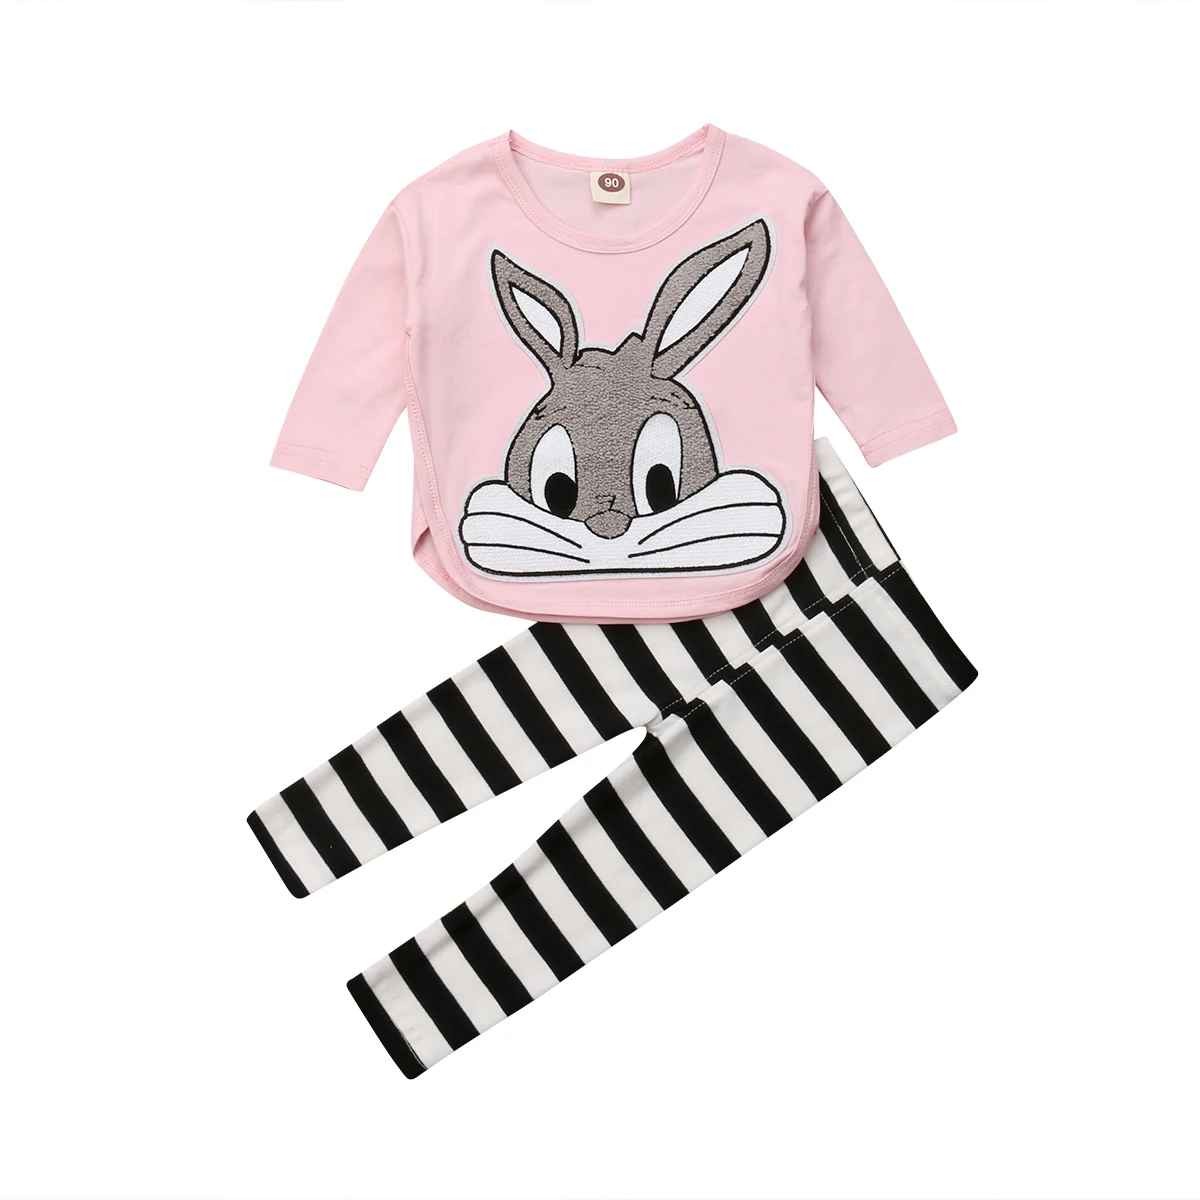 Kids Baby Piger Bunny Tøj Toppe, T-Shirt + Stribede Bukser Træningsdragt Udstyr 6M-5T